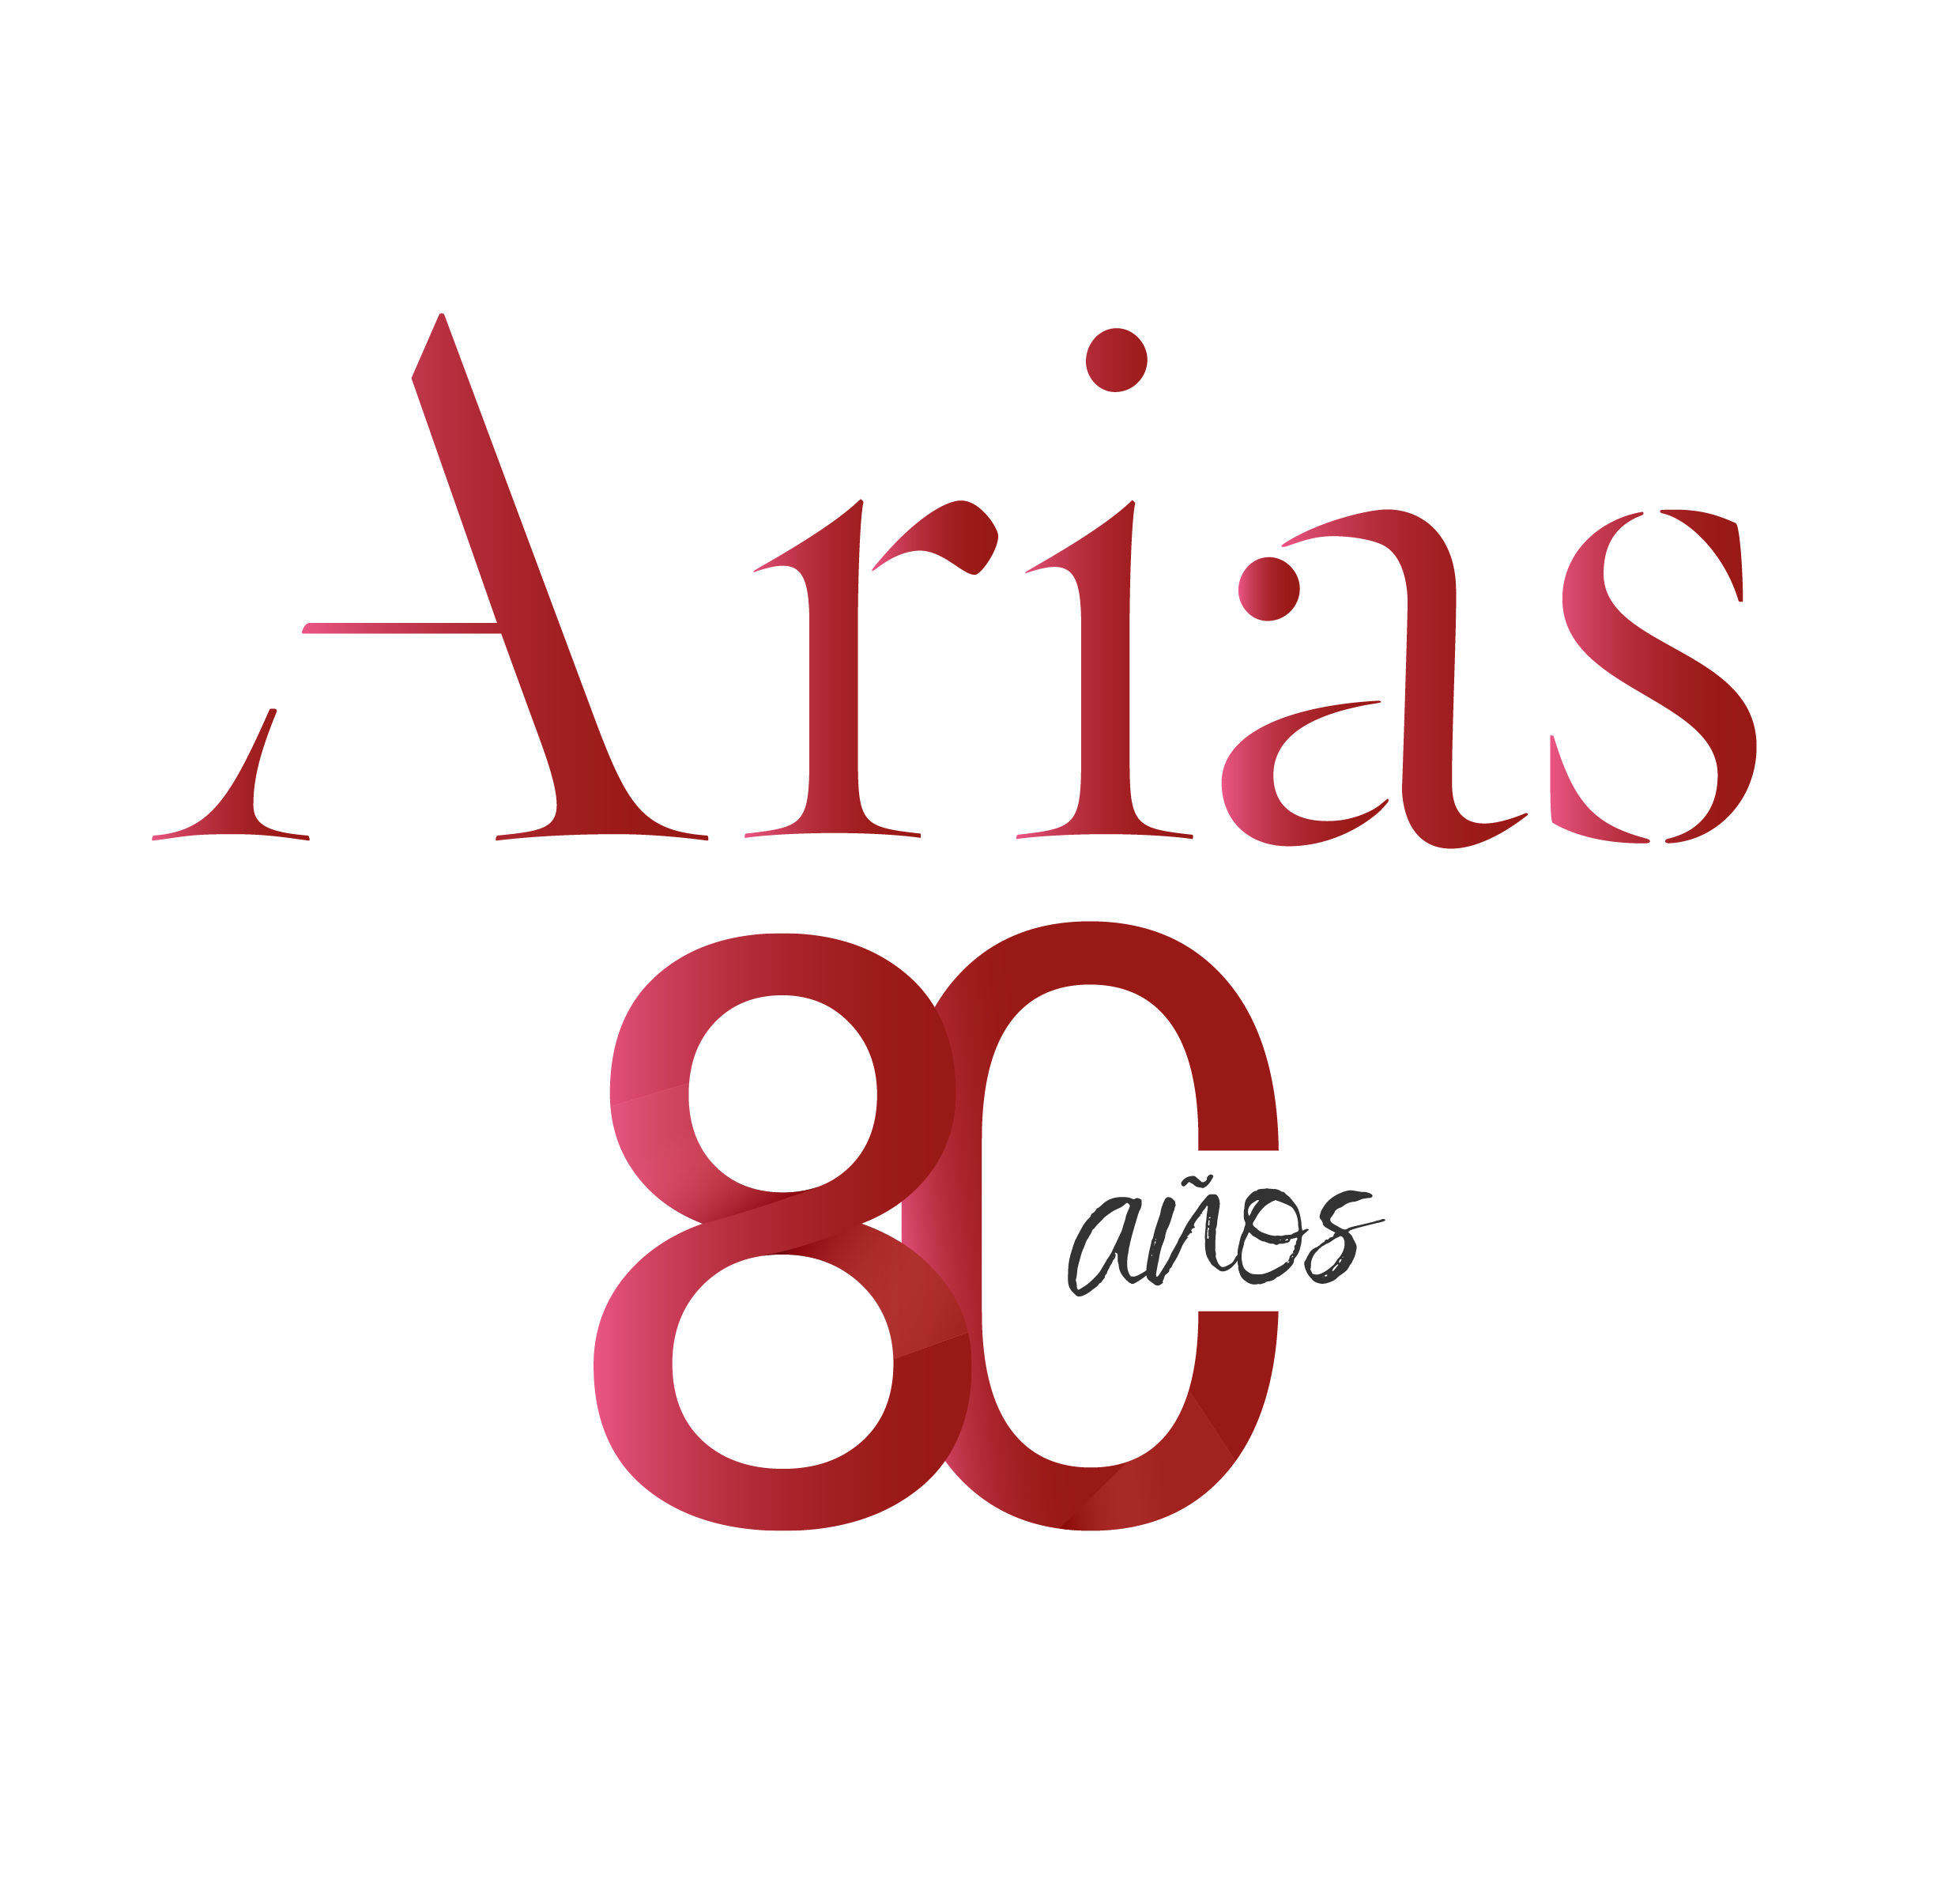 Logo Arias